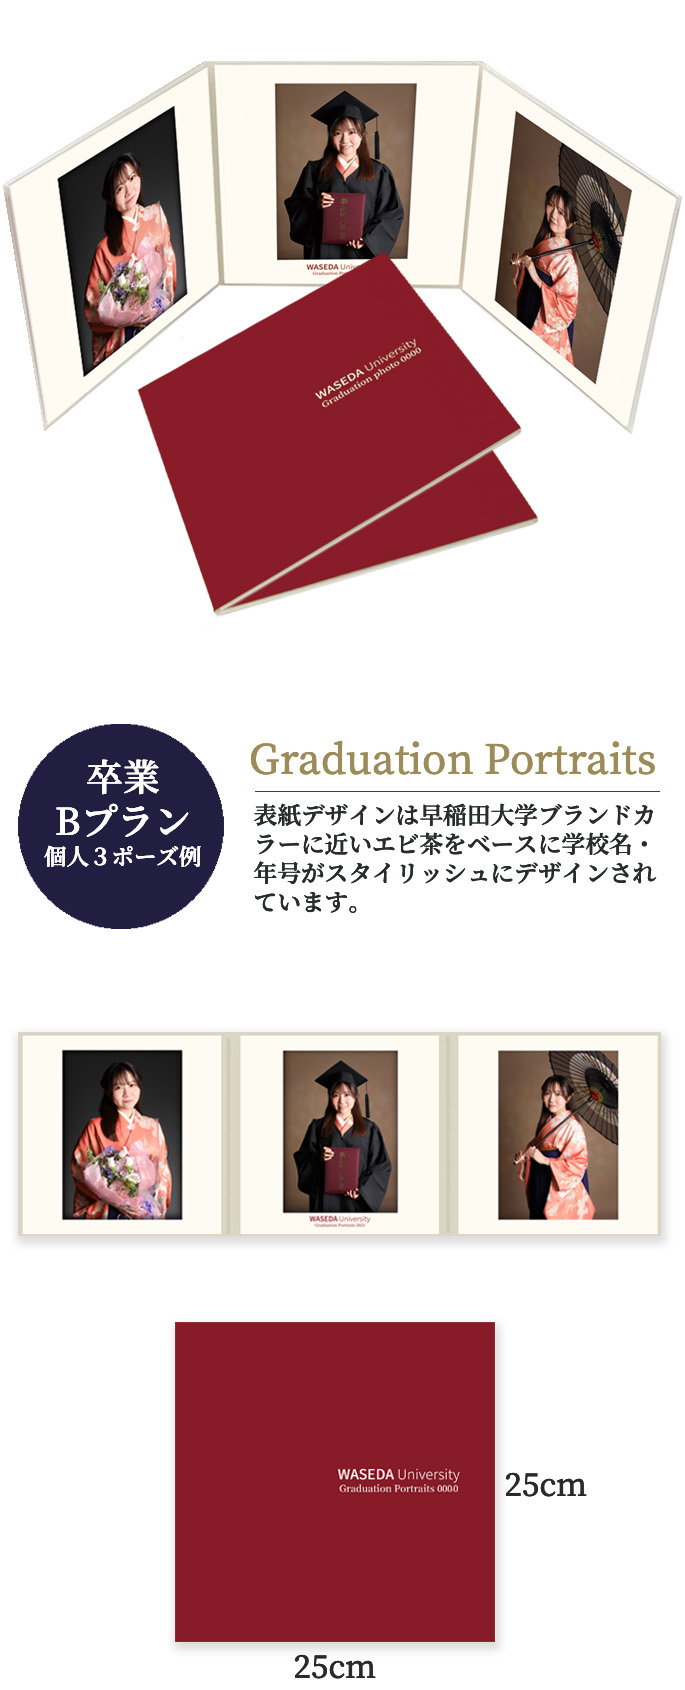 卒業 Bプラン 個人3ポーズ Graduation Portraits Graduation Portraits 表紙デザインは早稲田大学ブランドカラーに近いエビ茶をベースに学校名・年号がスタイリッシュにデザインされています。